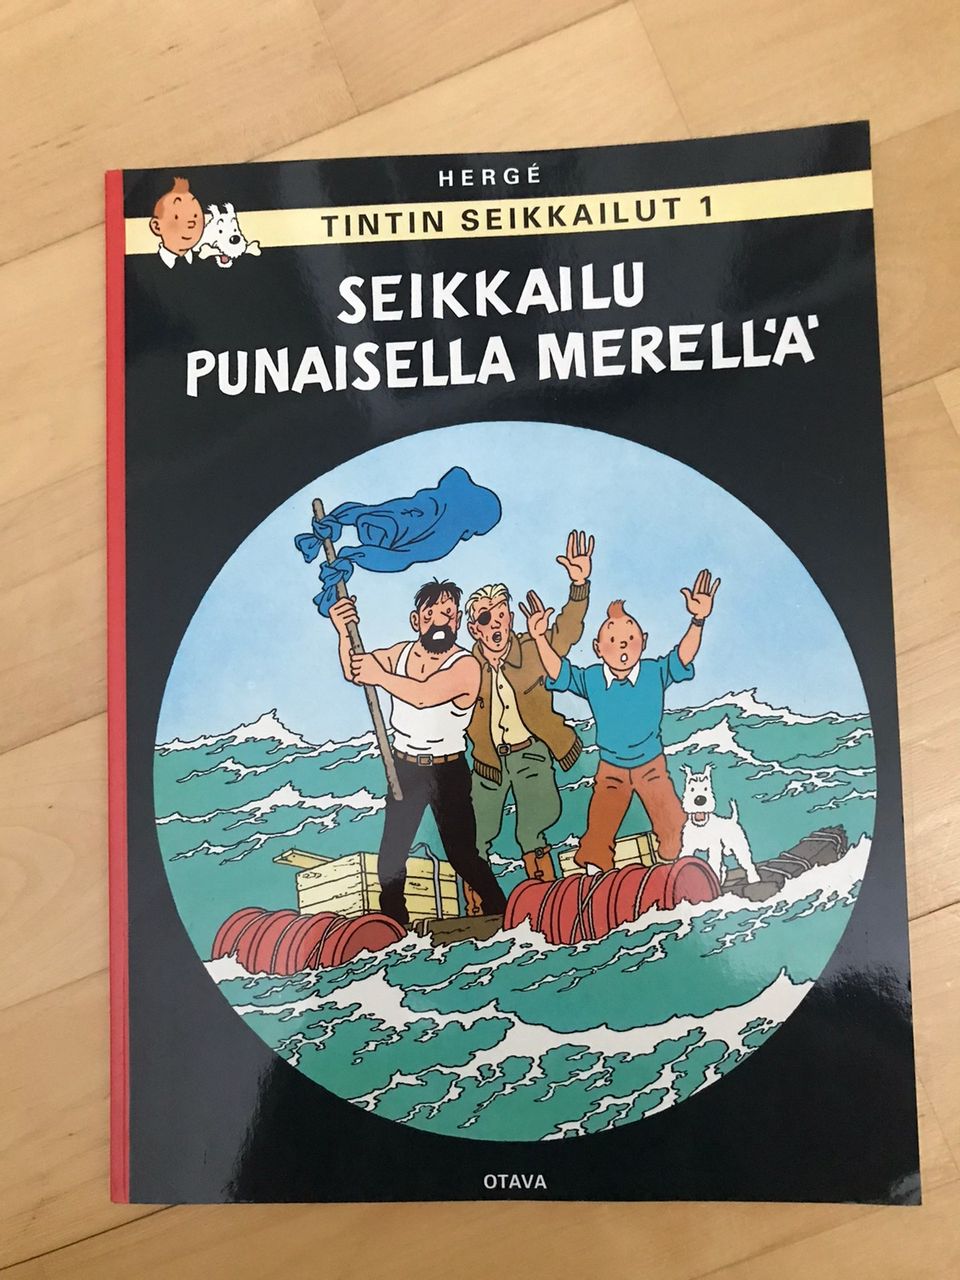 Tintin seikkailut 1: Seikkailu punaisella merellä